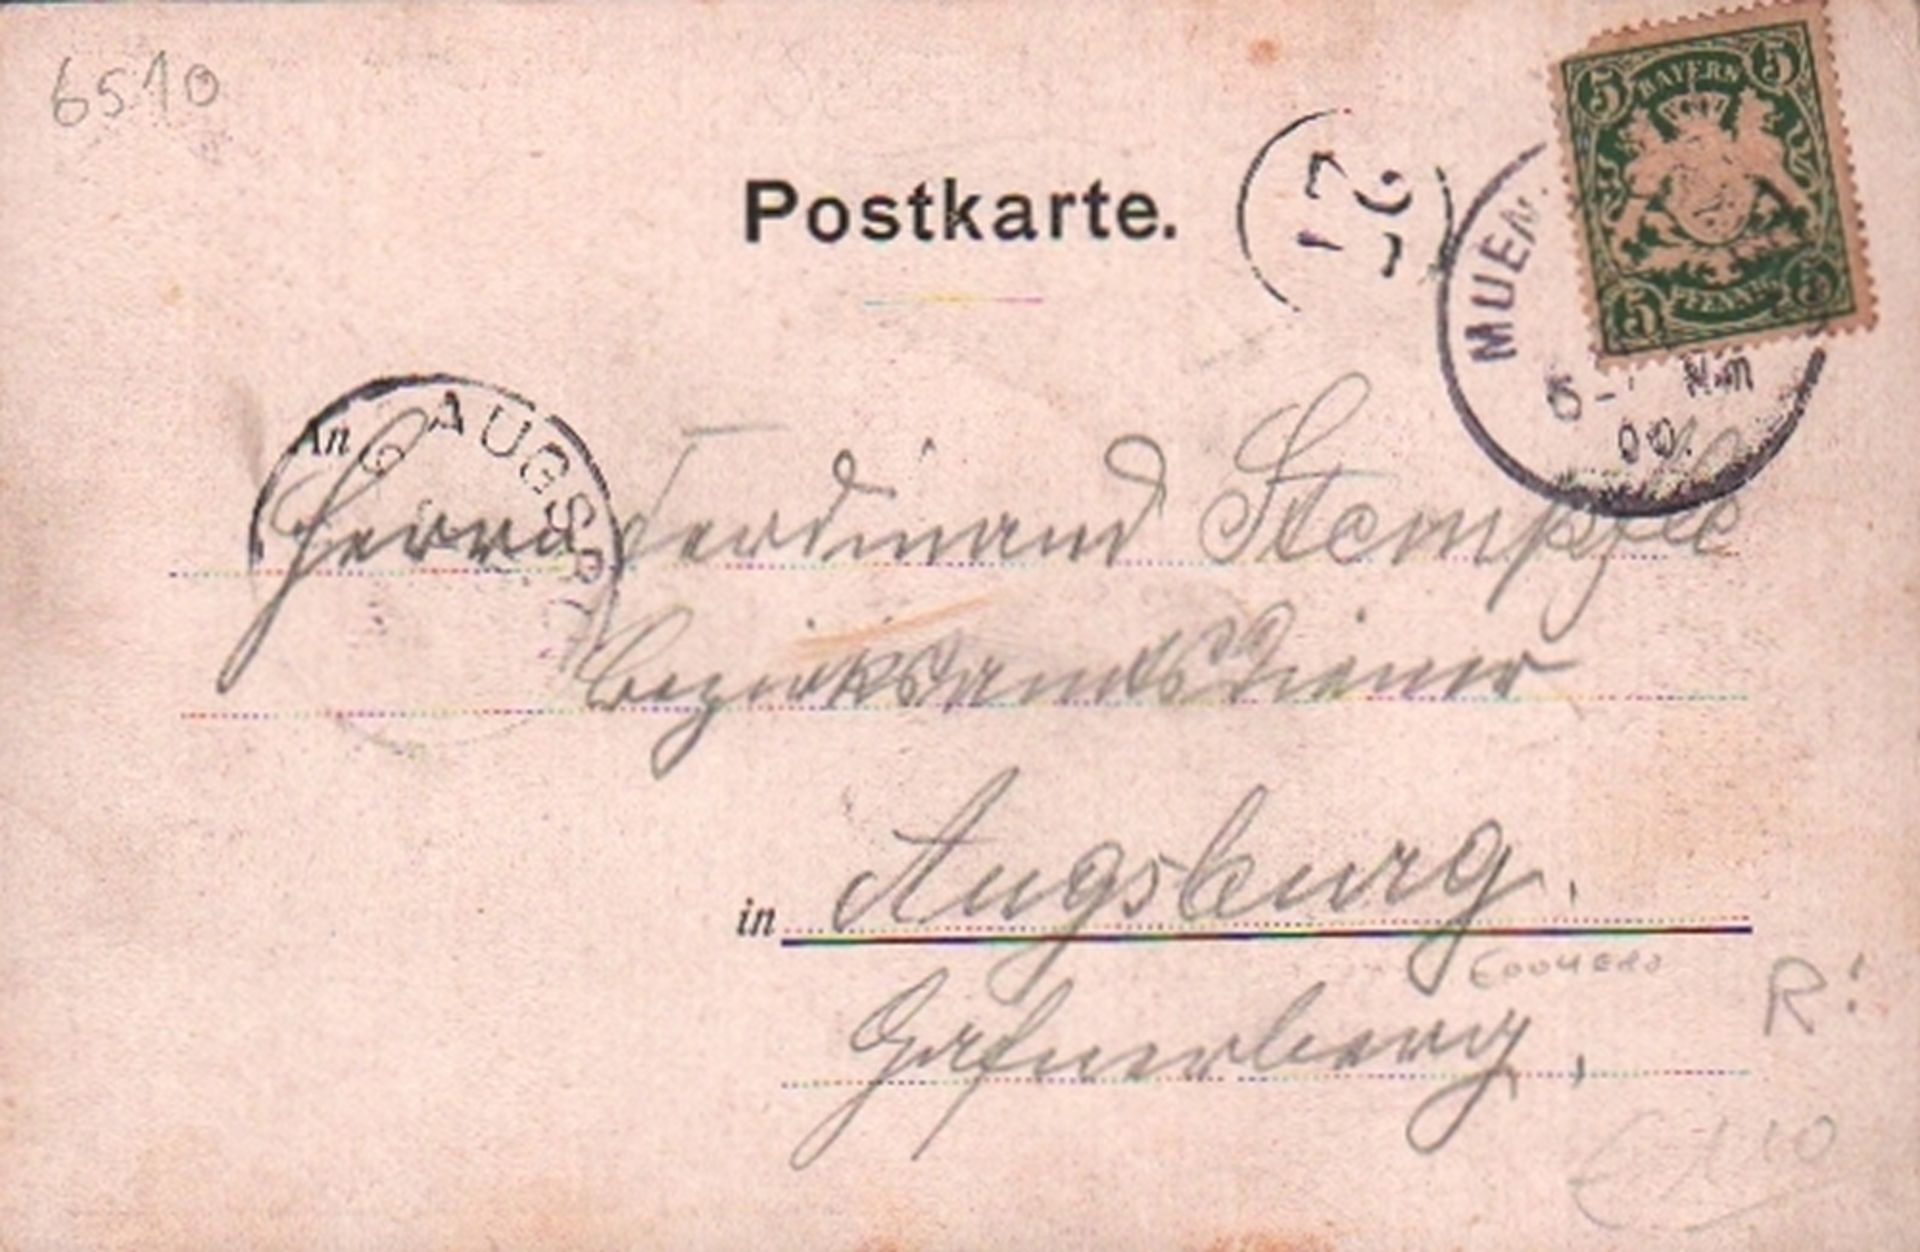 Postkarte. München 1900. - Image 2 of 2